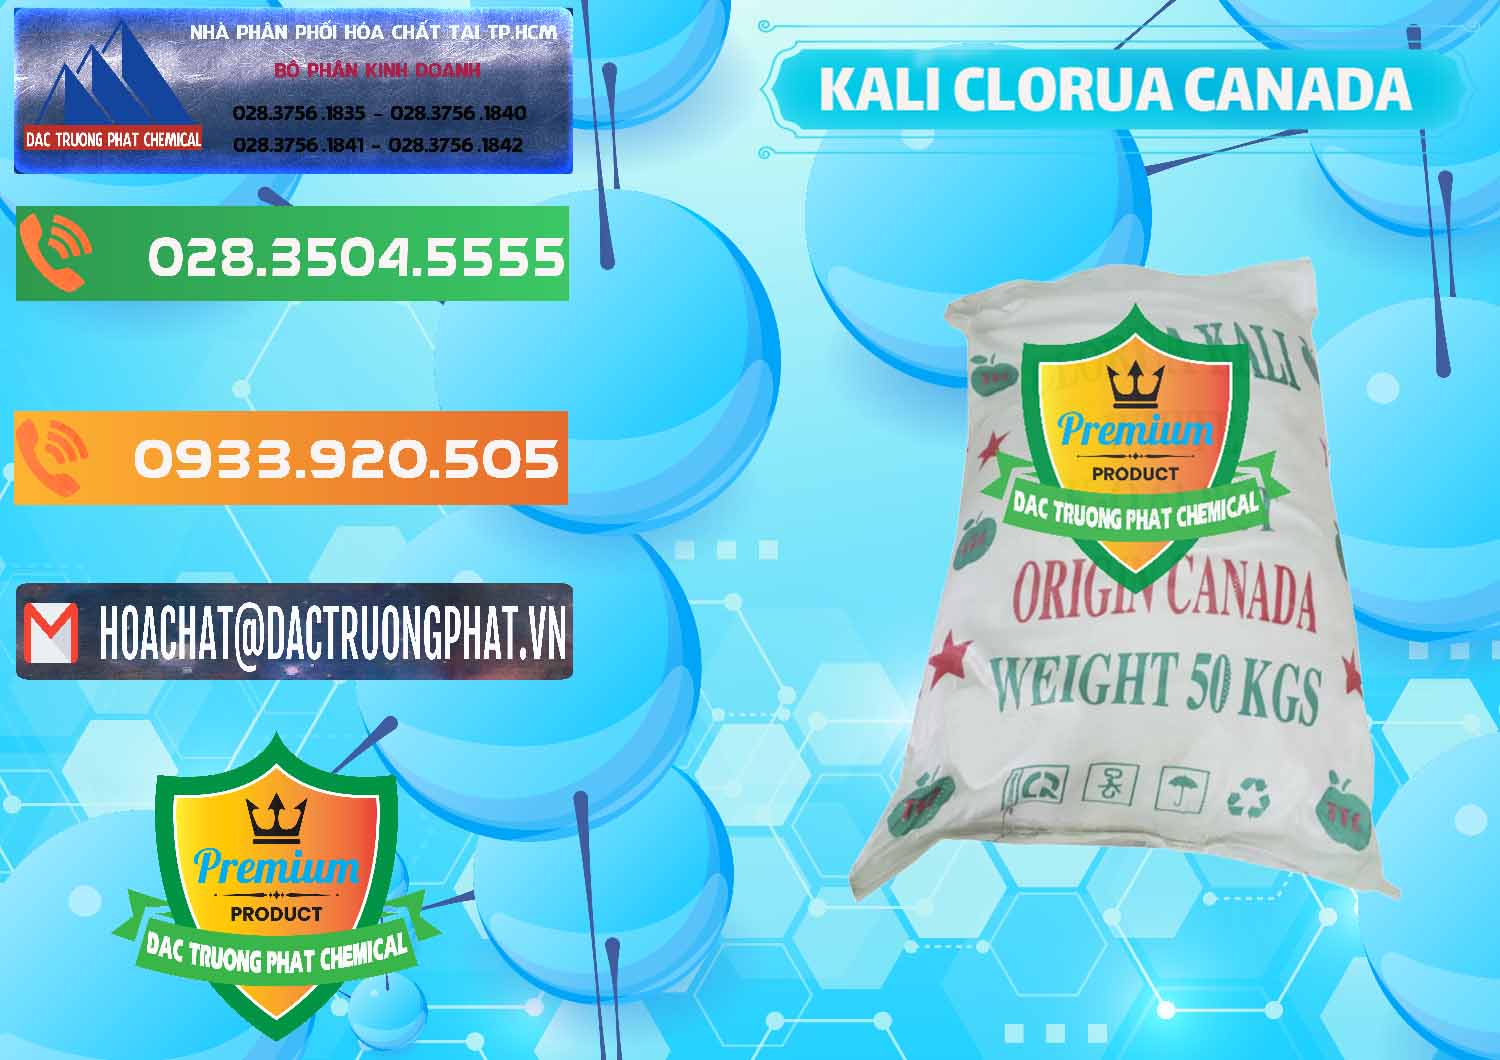 Nơi chuyên bán _ phân phối KCL – Kali Clorua Trắng Canada - 0437 - Kinh doanh và phân phối hóa chất tại TP.HCM - hoachatxulynuoc.com.vn